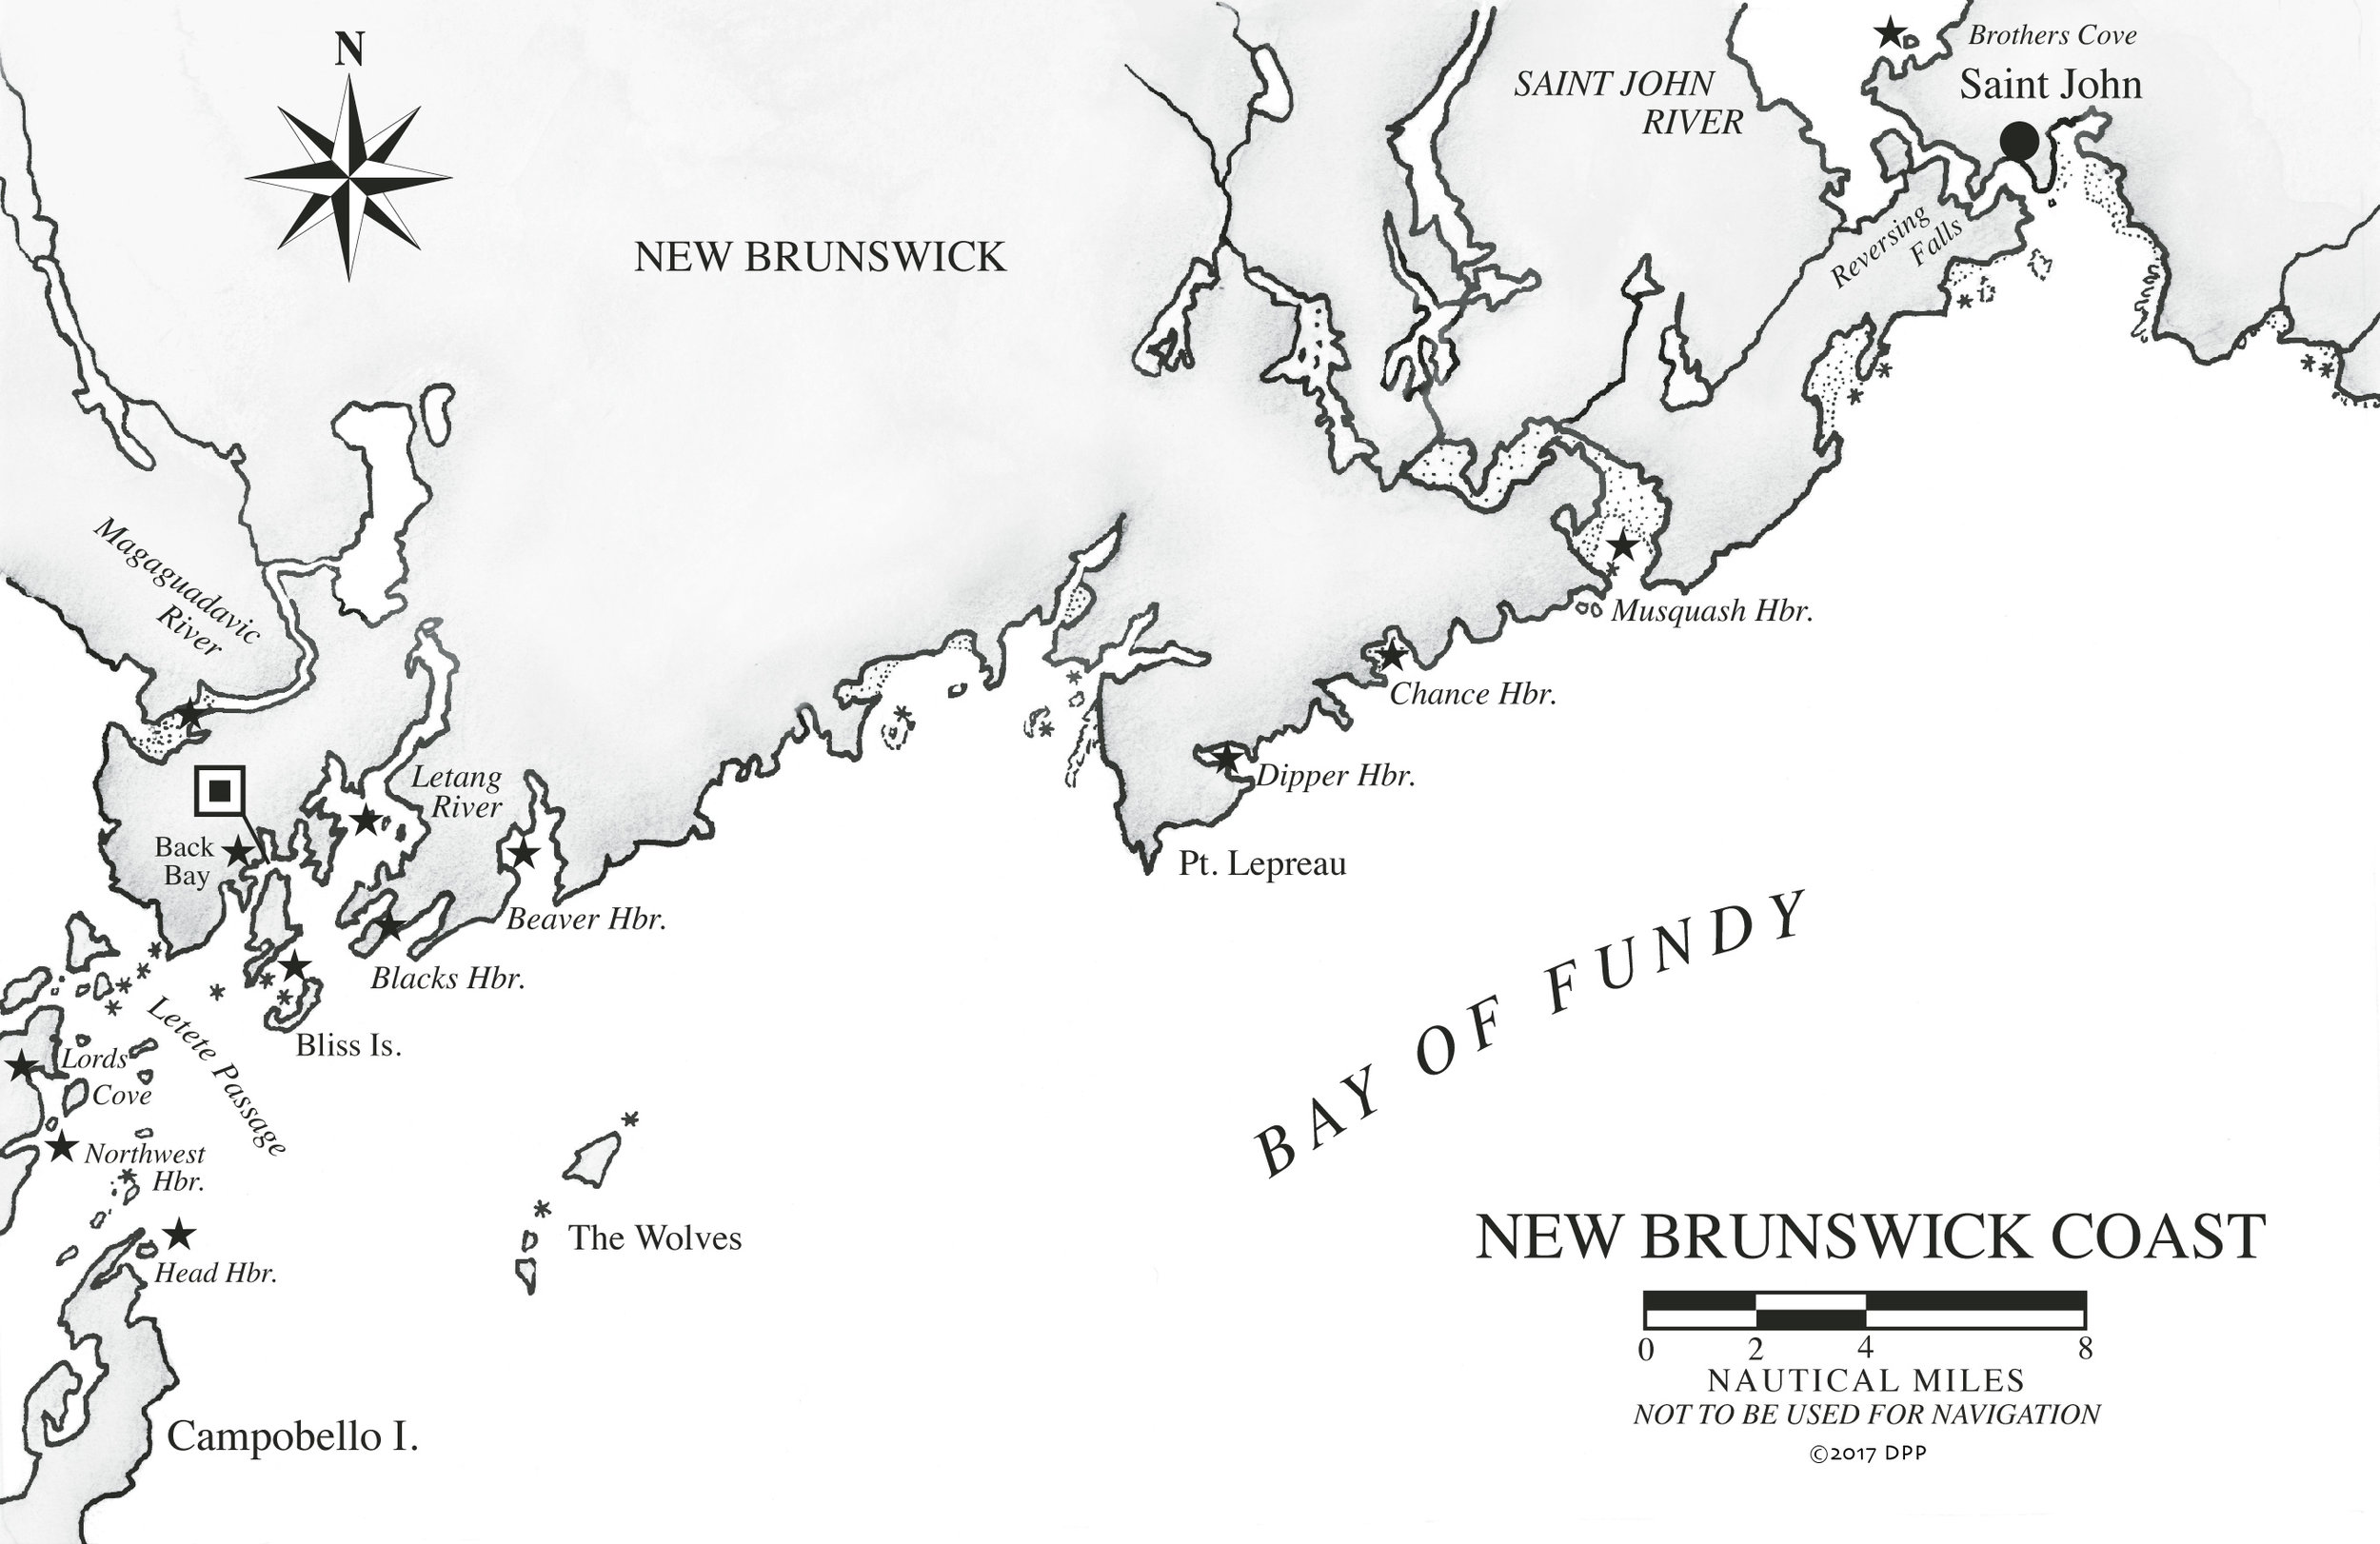 Saint John, bahía de Fundy, Nuevo Brunswick - Excursión a St